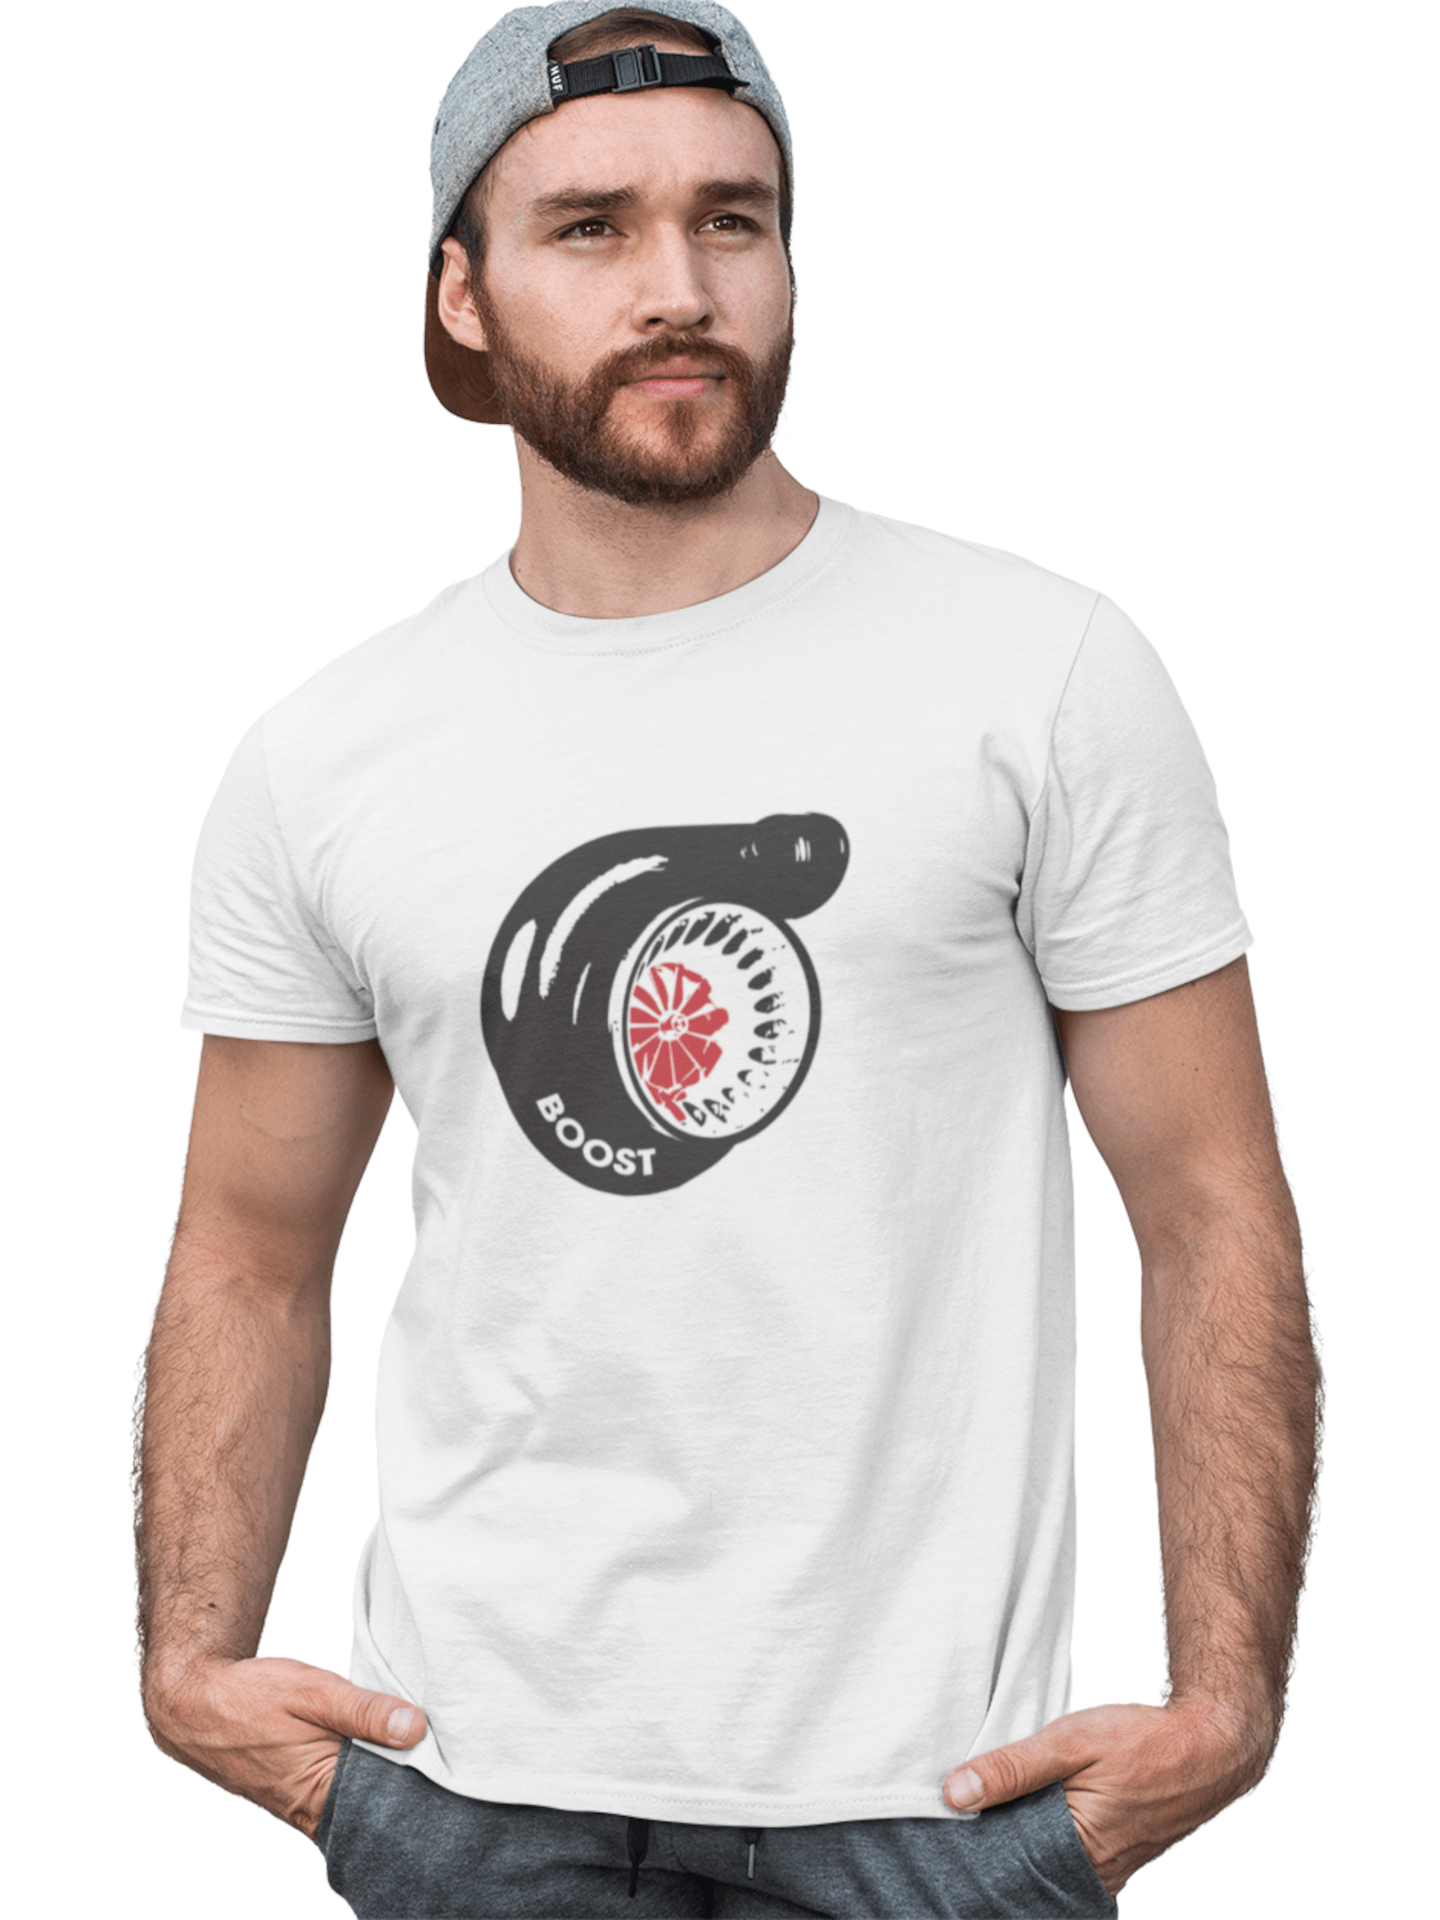 Boost - Herren T-Shirt von TurboArts